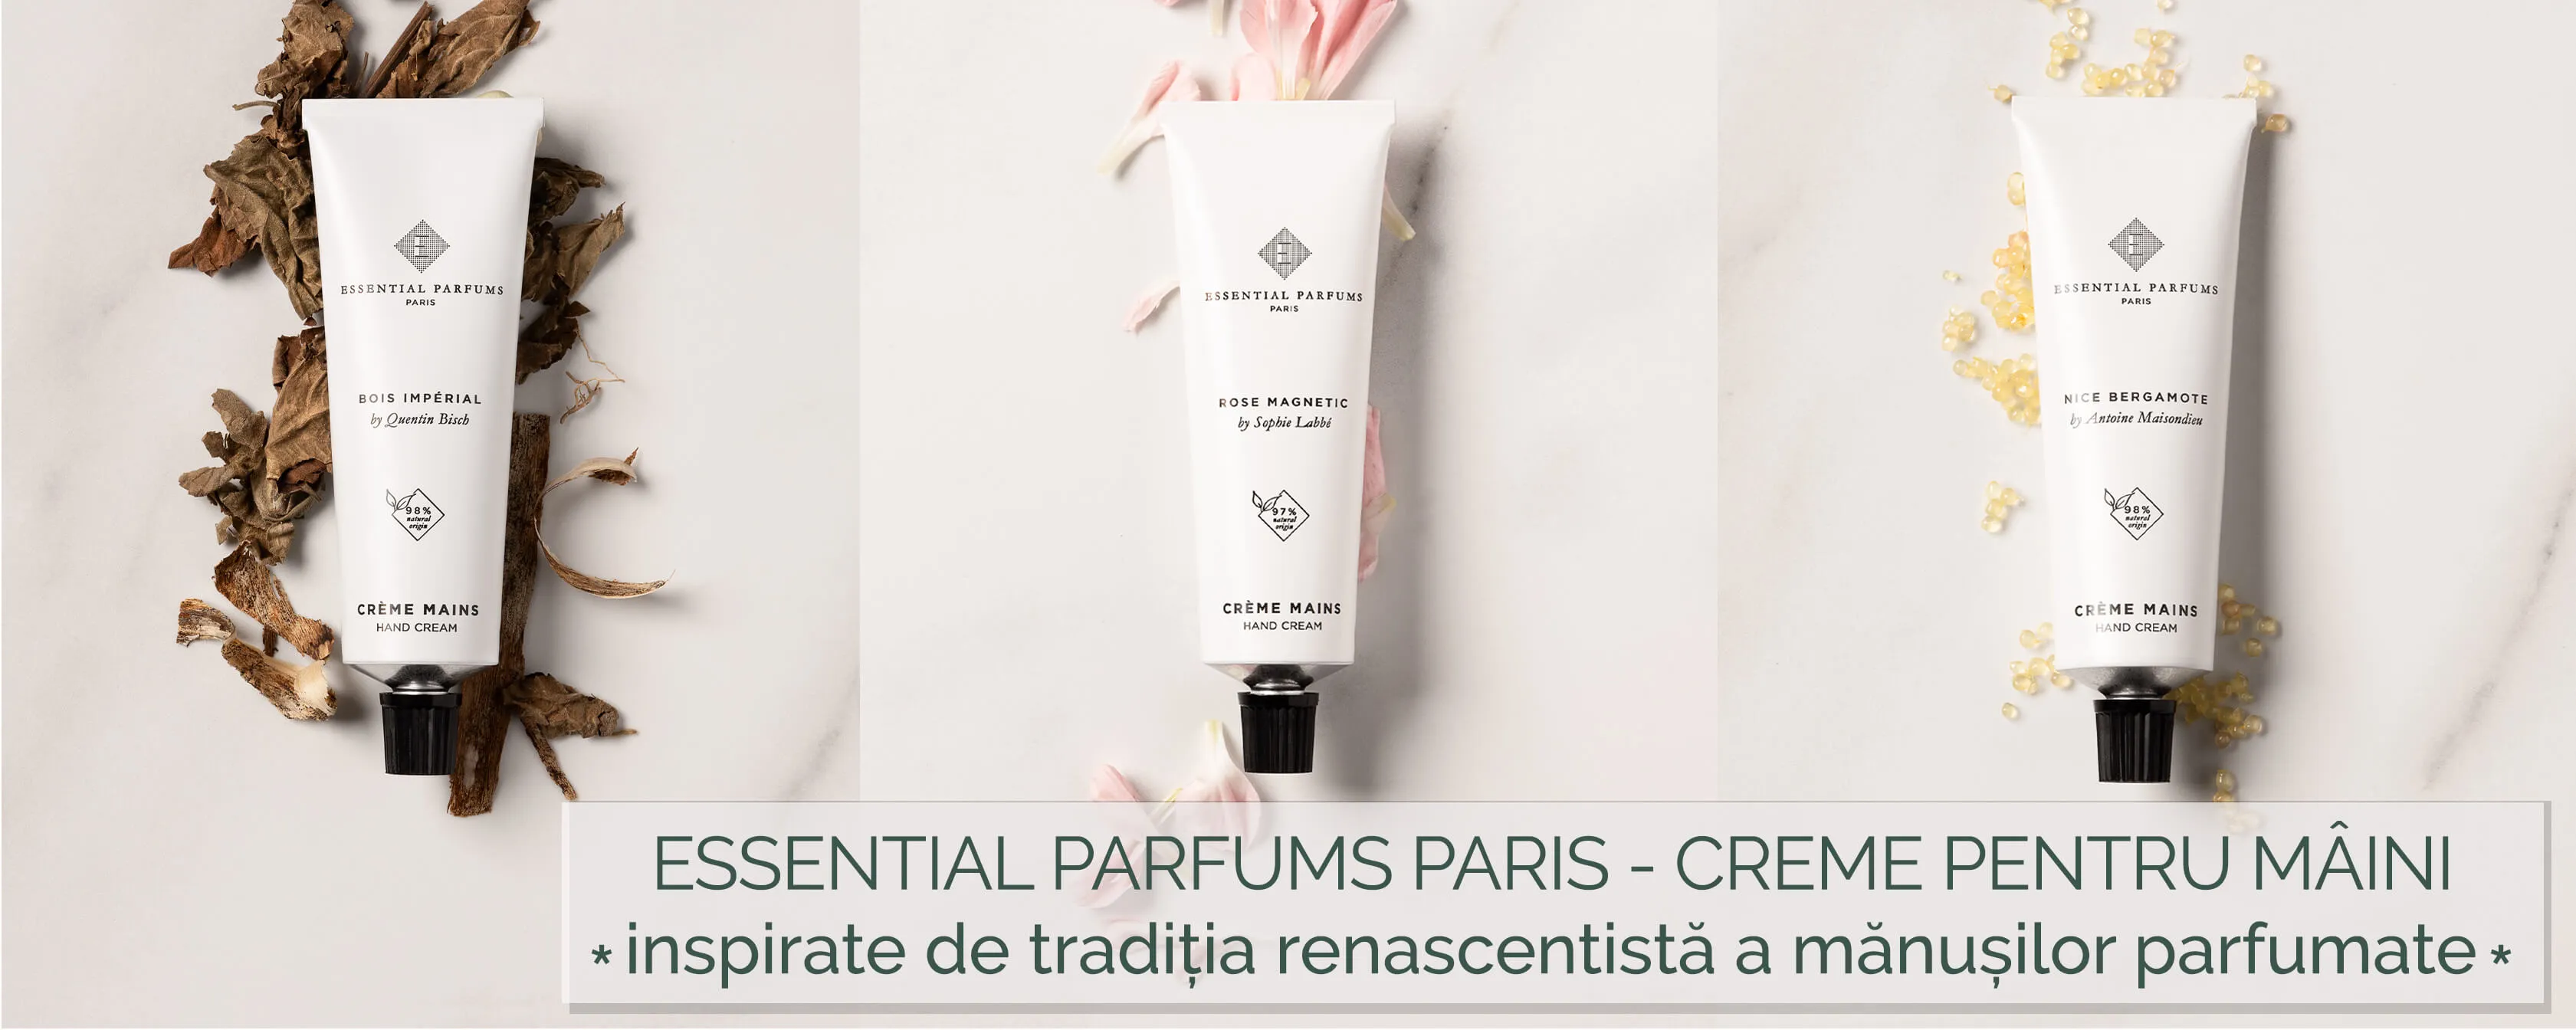 Essential Parfums Hand Cream